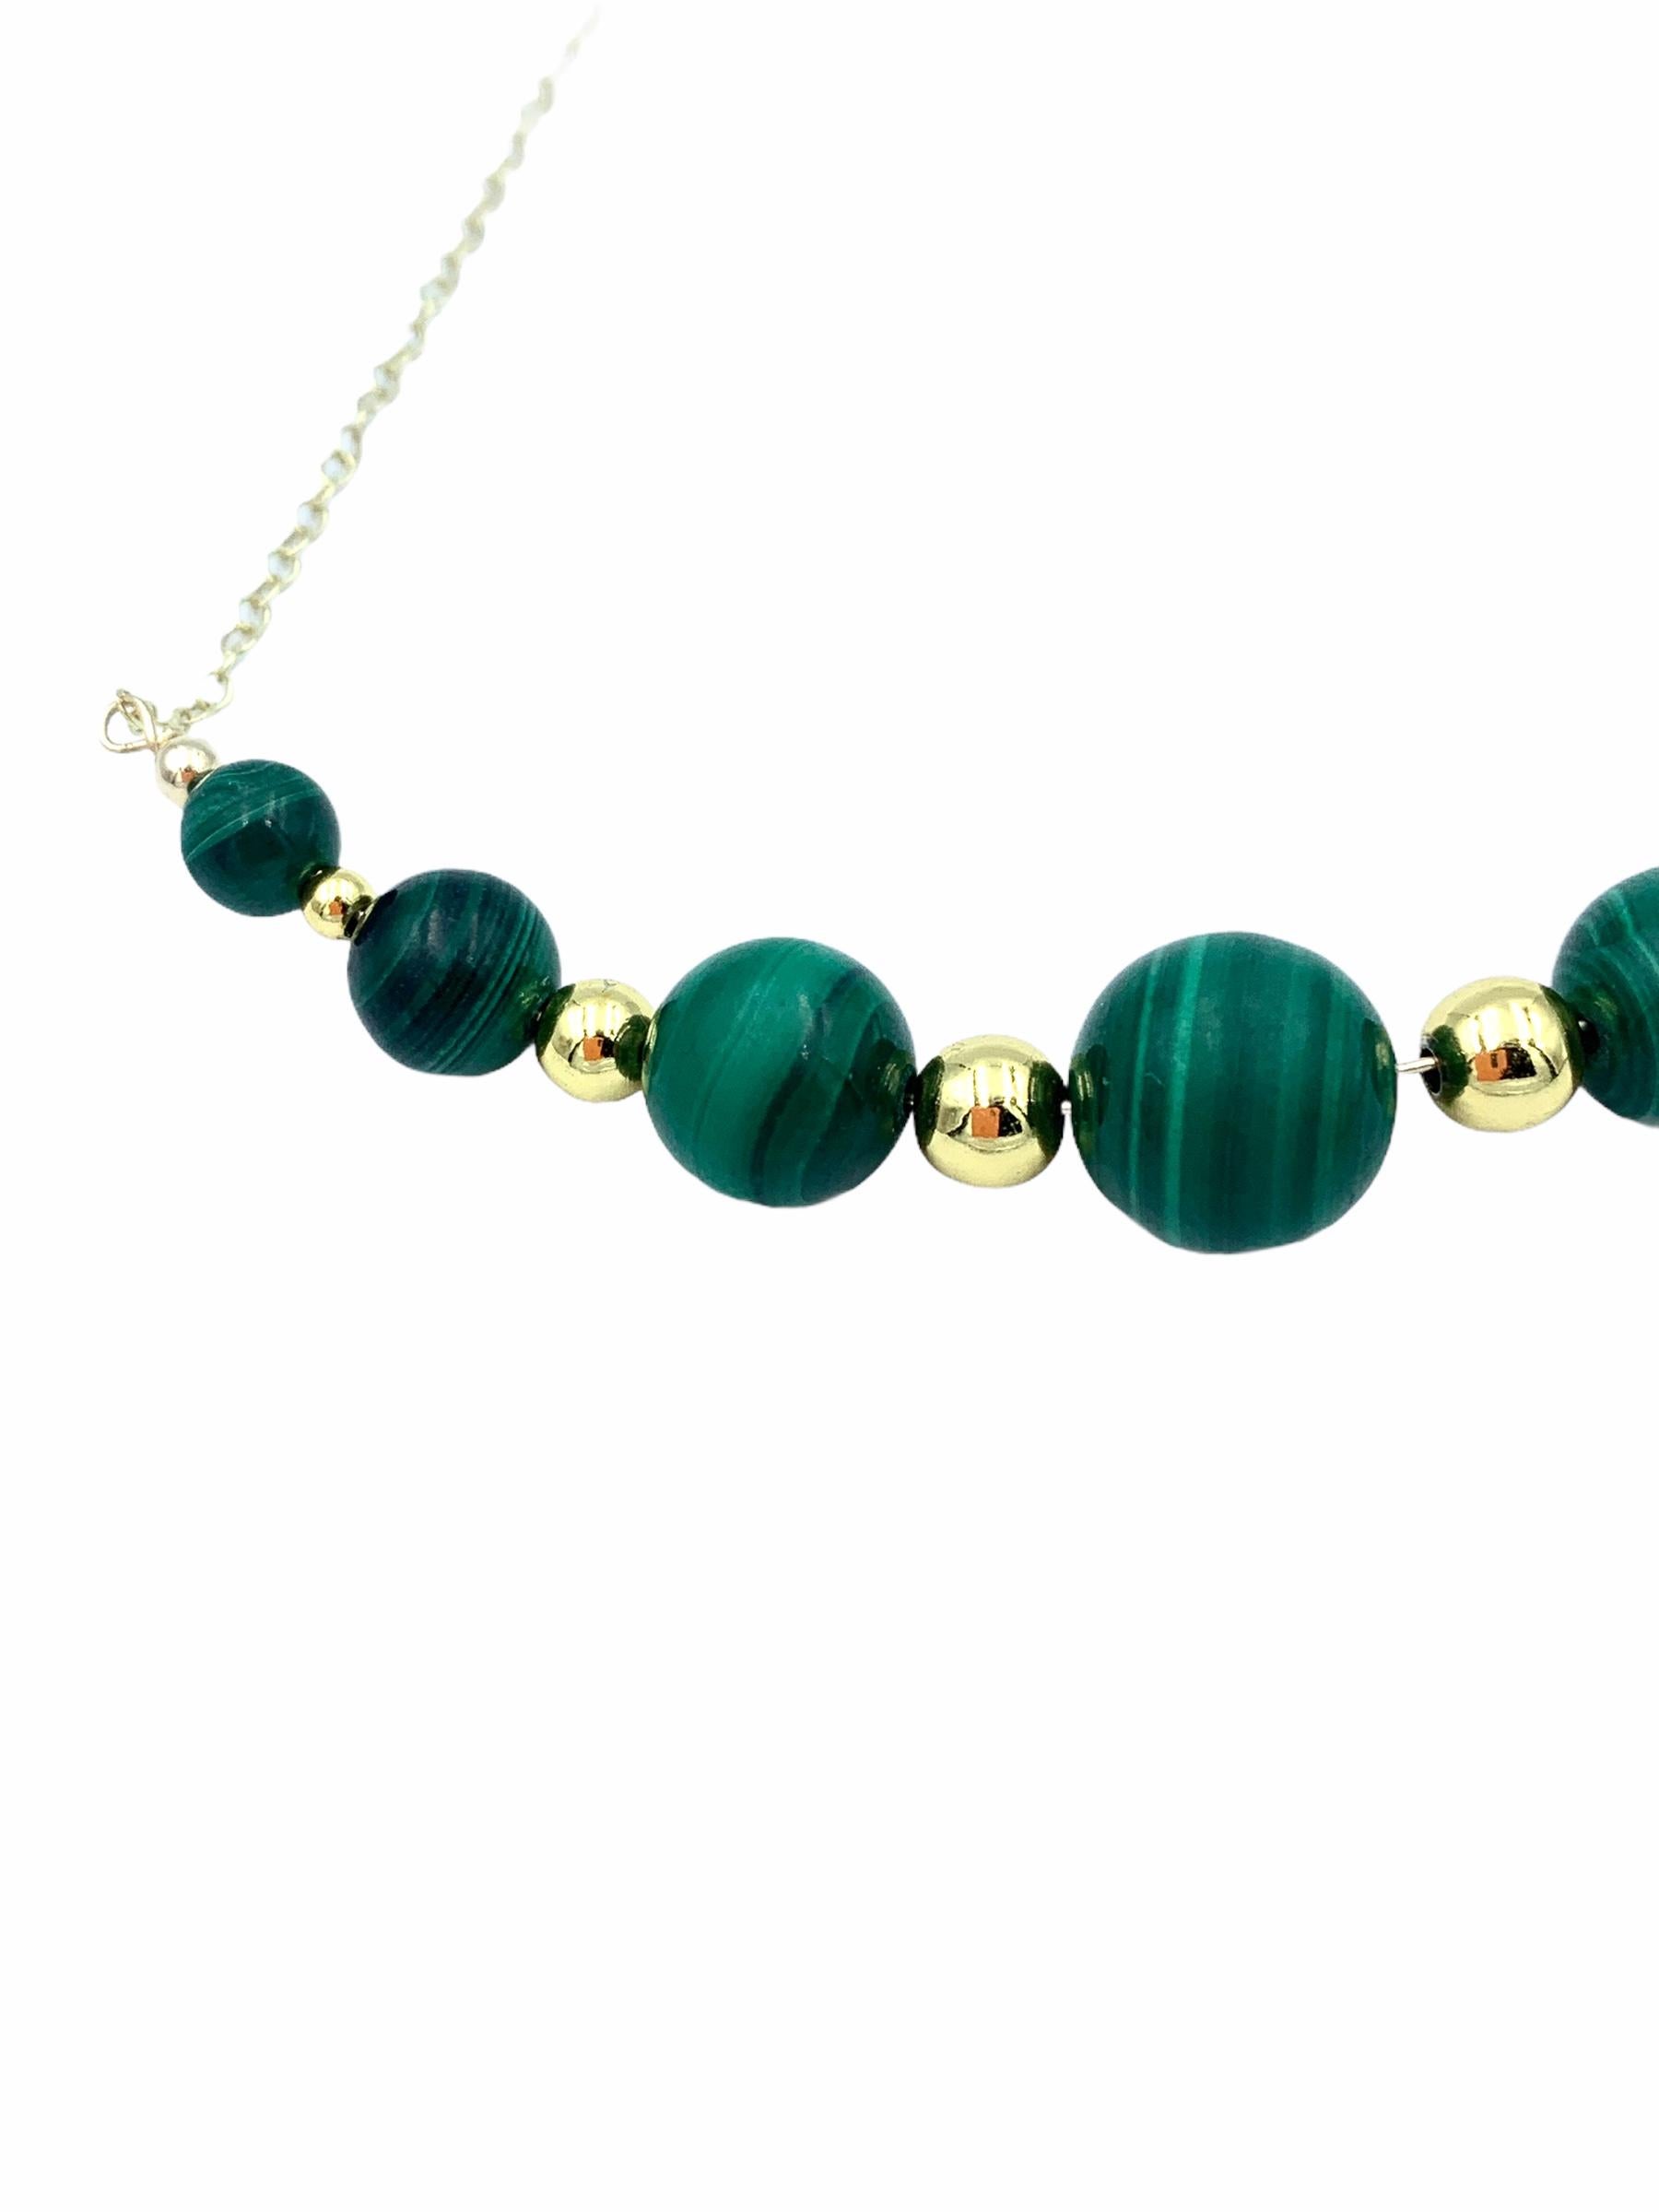 Réalisées à la main en or jaune 9 carats, les perles de malachite suspendues sont enfilées avec un fil d'or massif et montées sur une délicate chaîne en câble de 1,7 mm. Les jolis tourbillons verts de la perle centrale mesurent 12 mm, 10 mm les deux